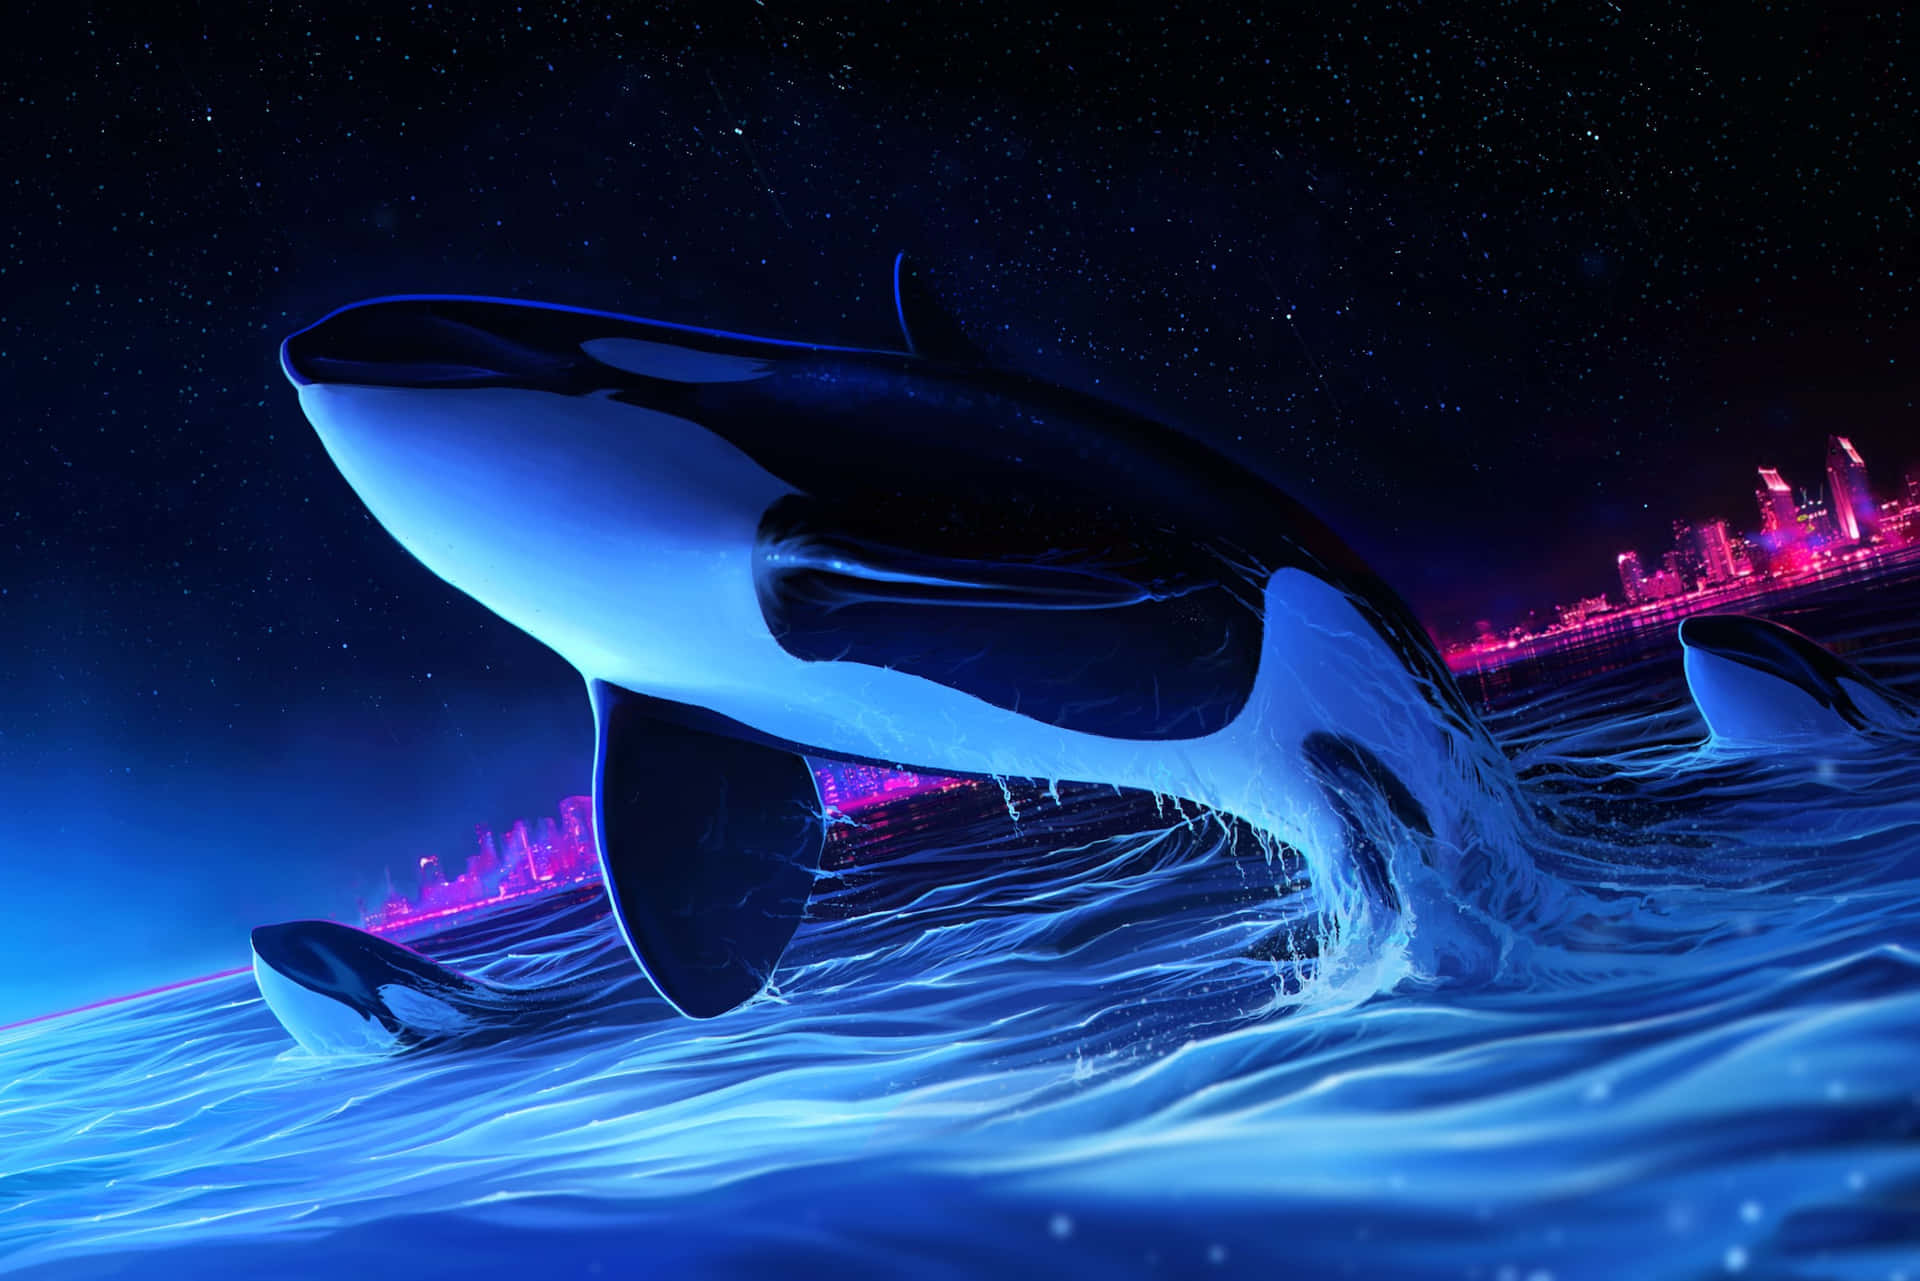 Imagende Arte Digital De Una Orca Asesina En La Ciudad